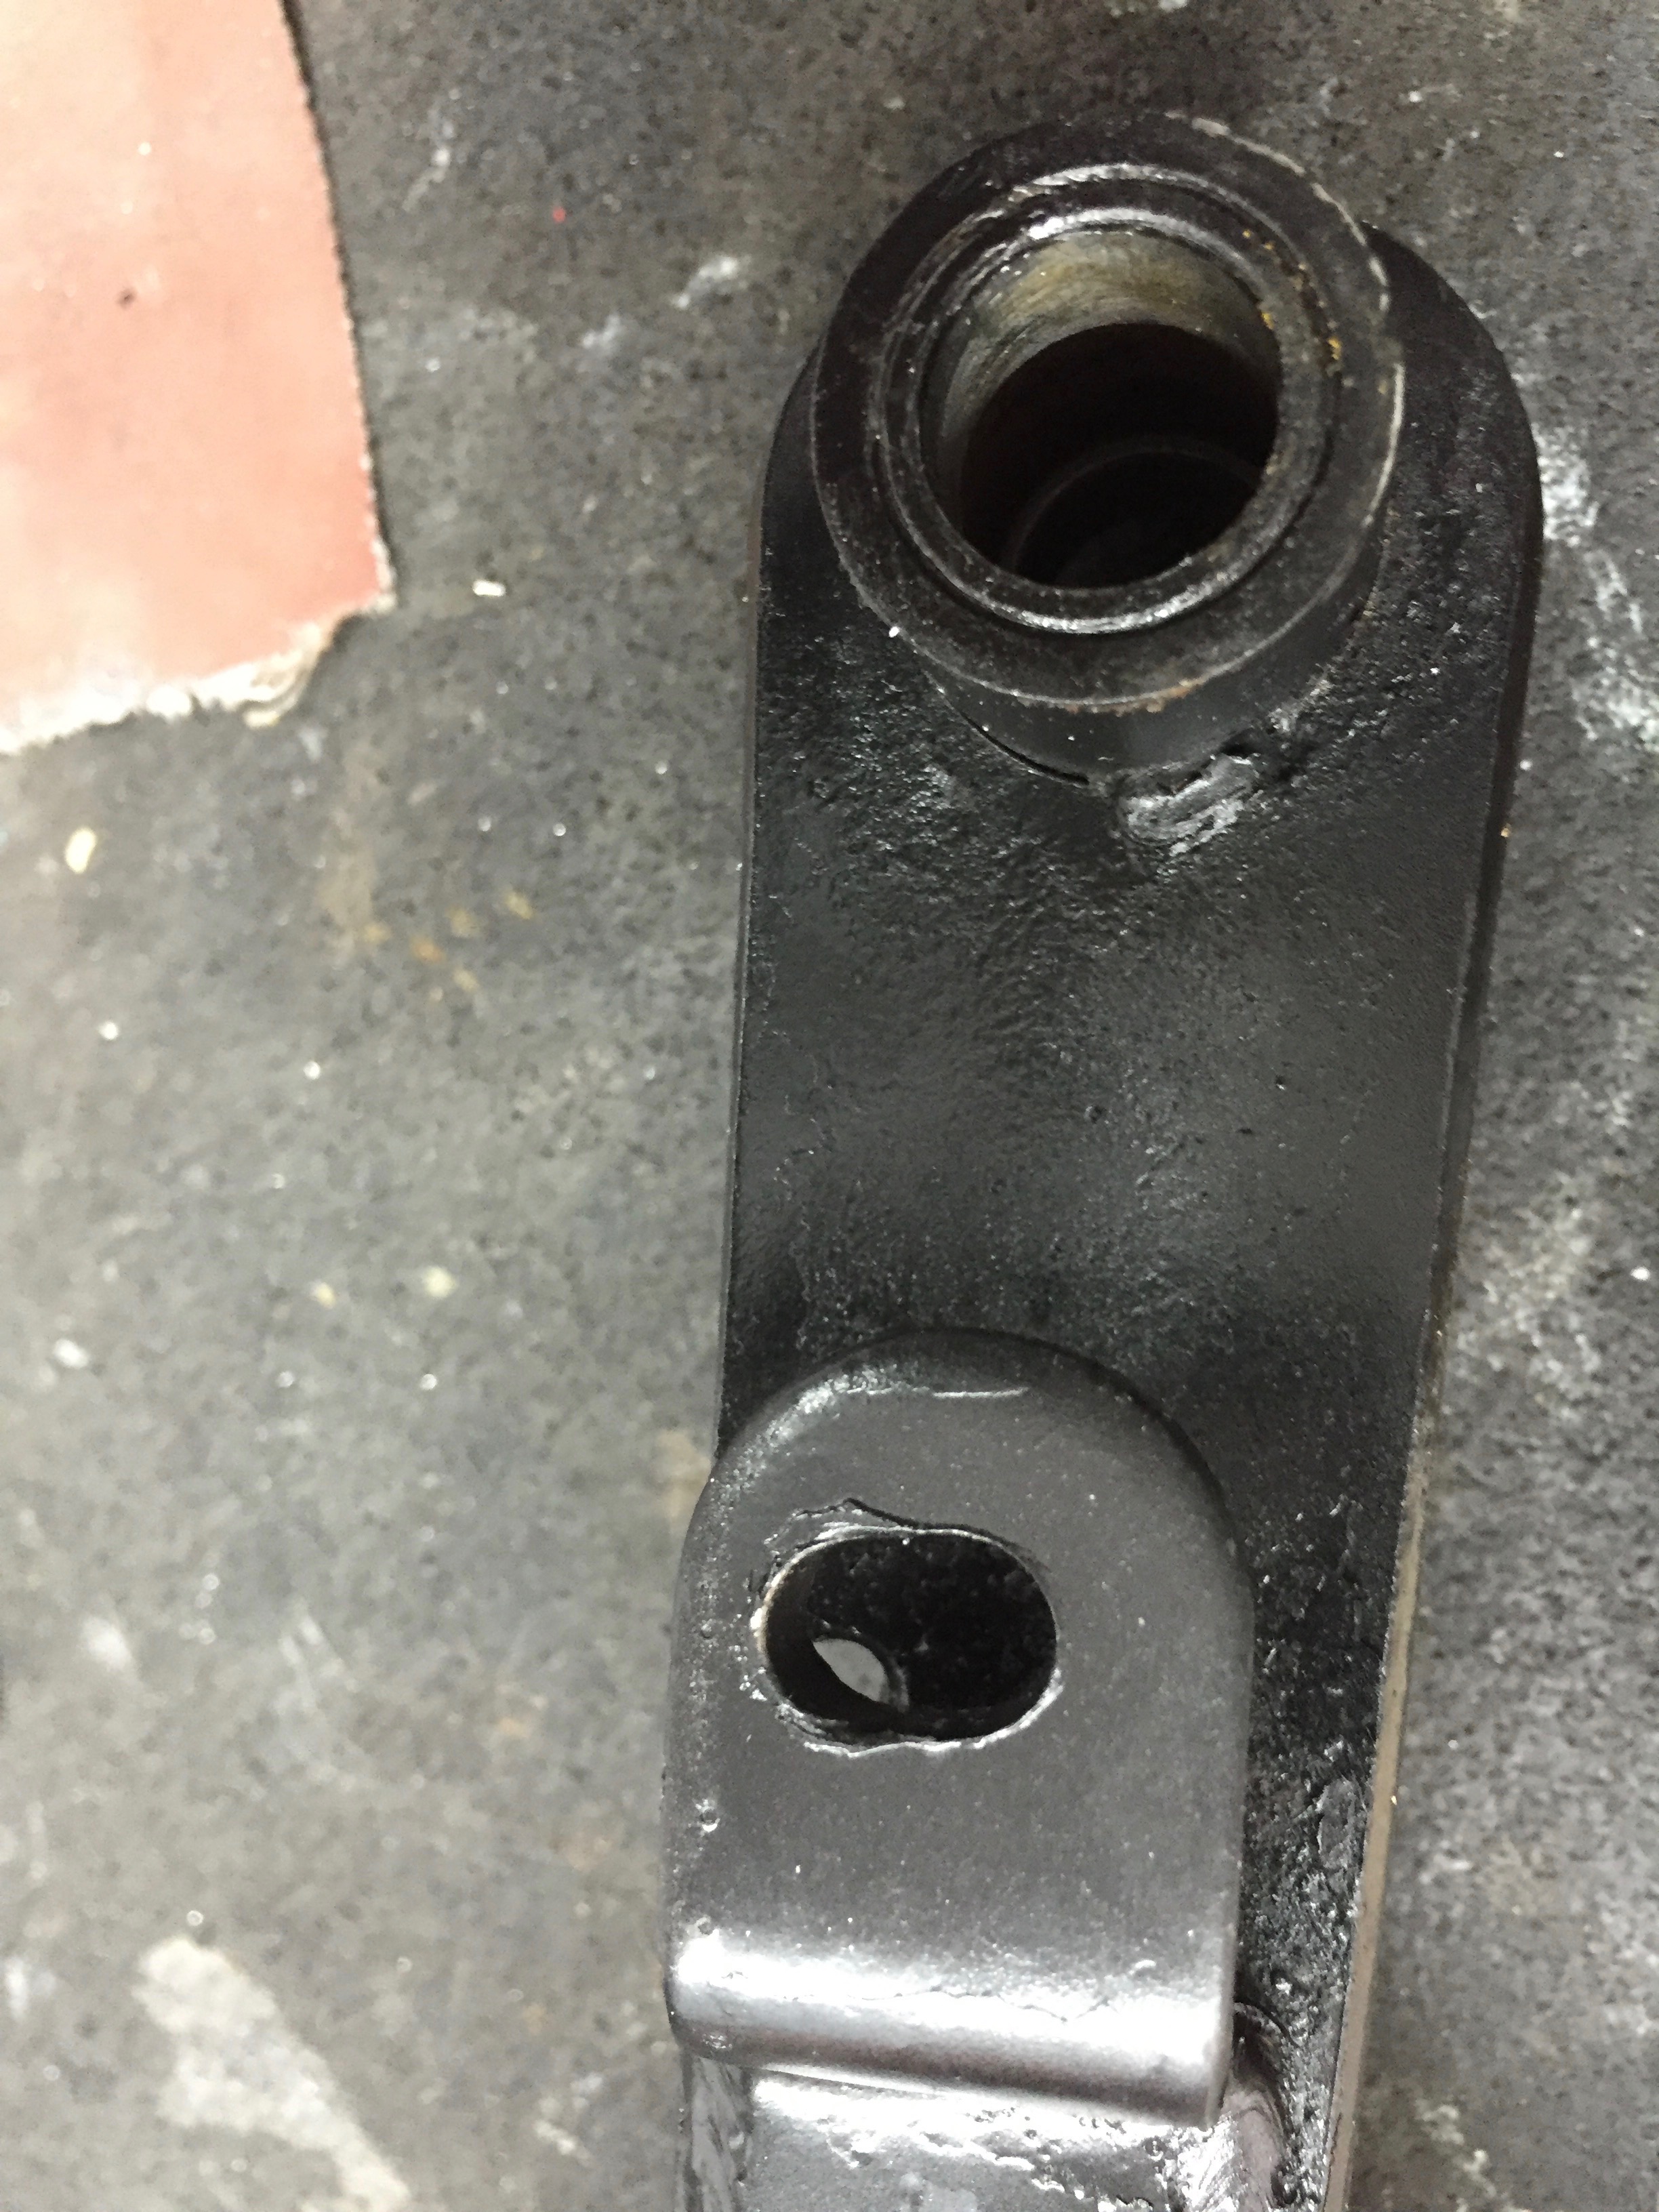 advice on adjusting clutch slave cylinder - Suspension & Steering - The ...